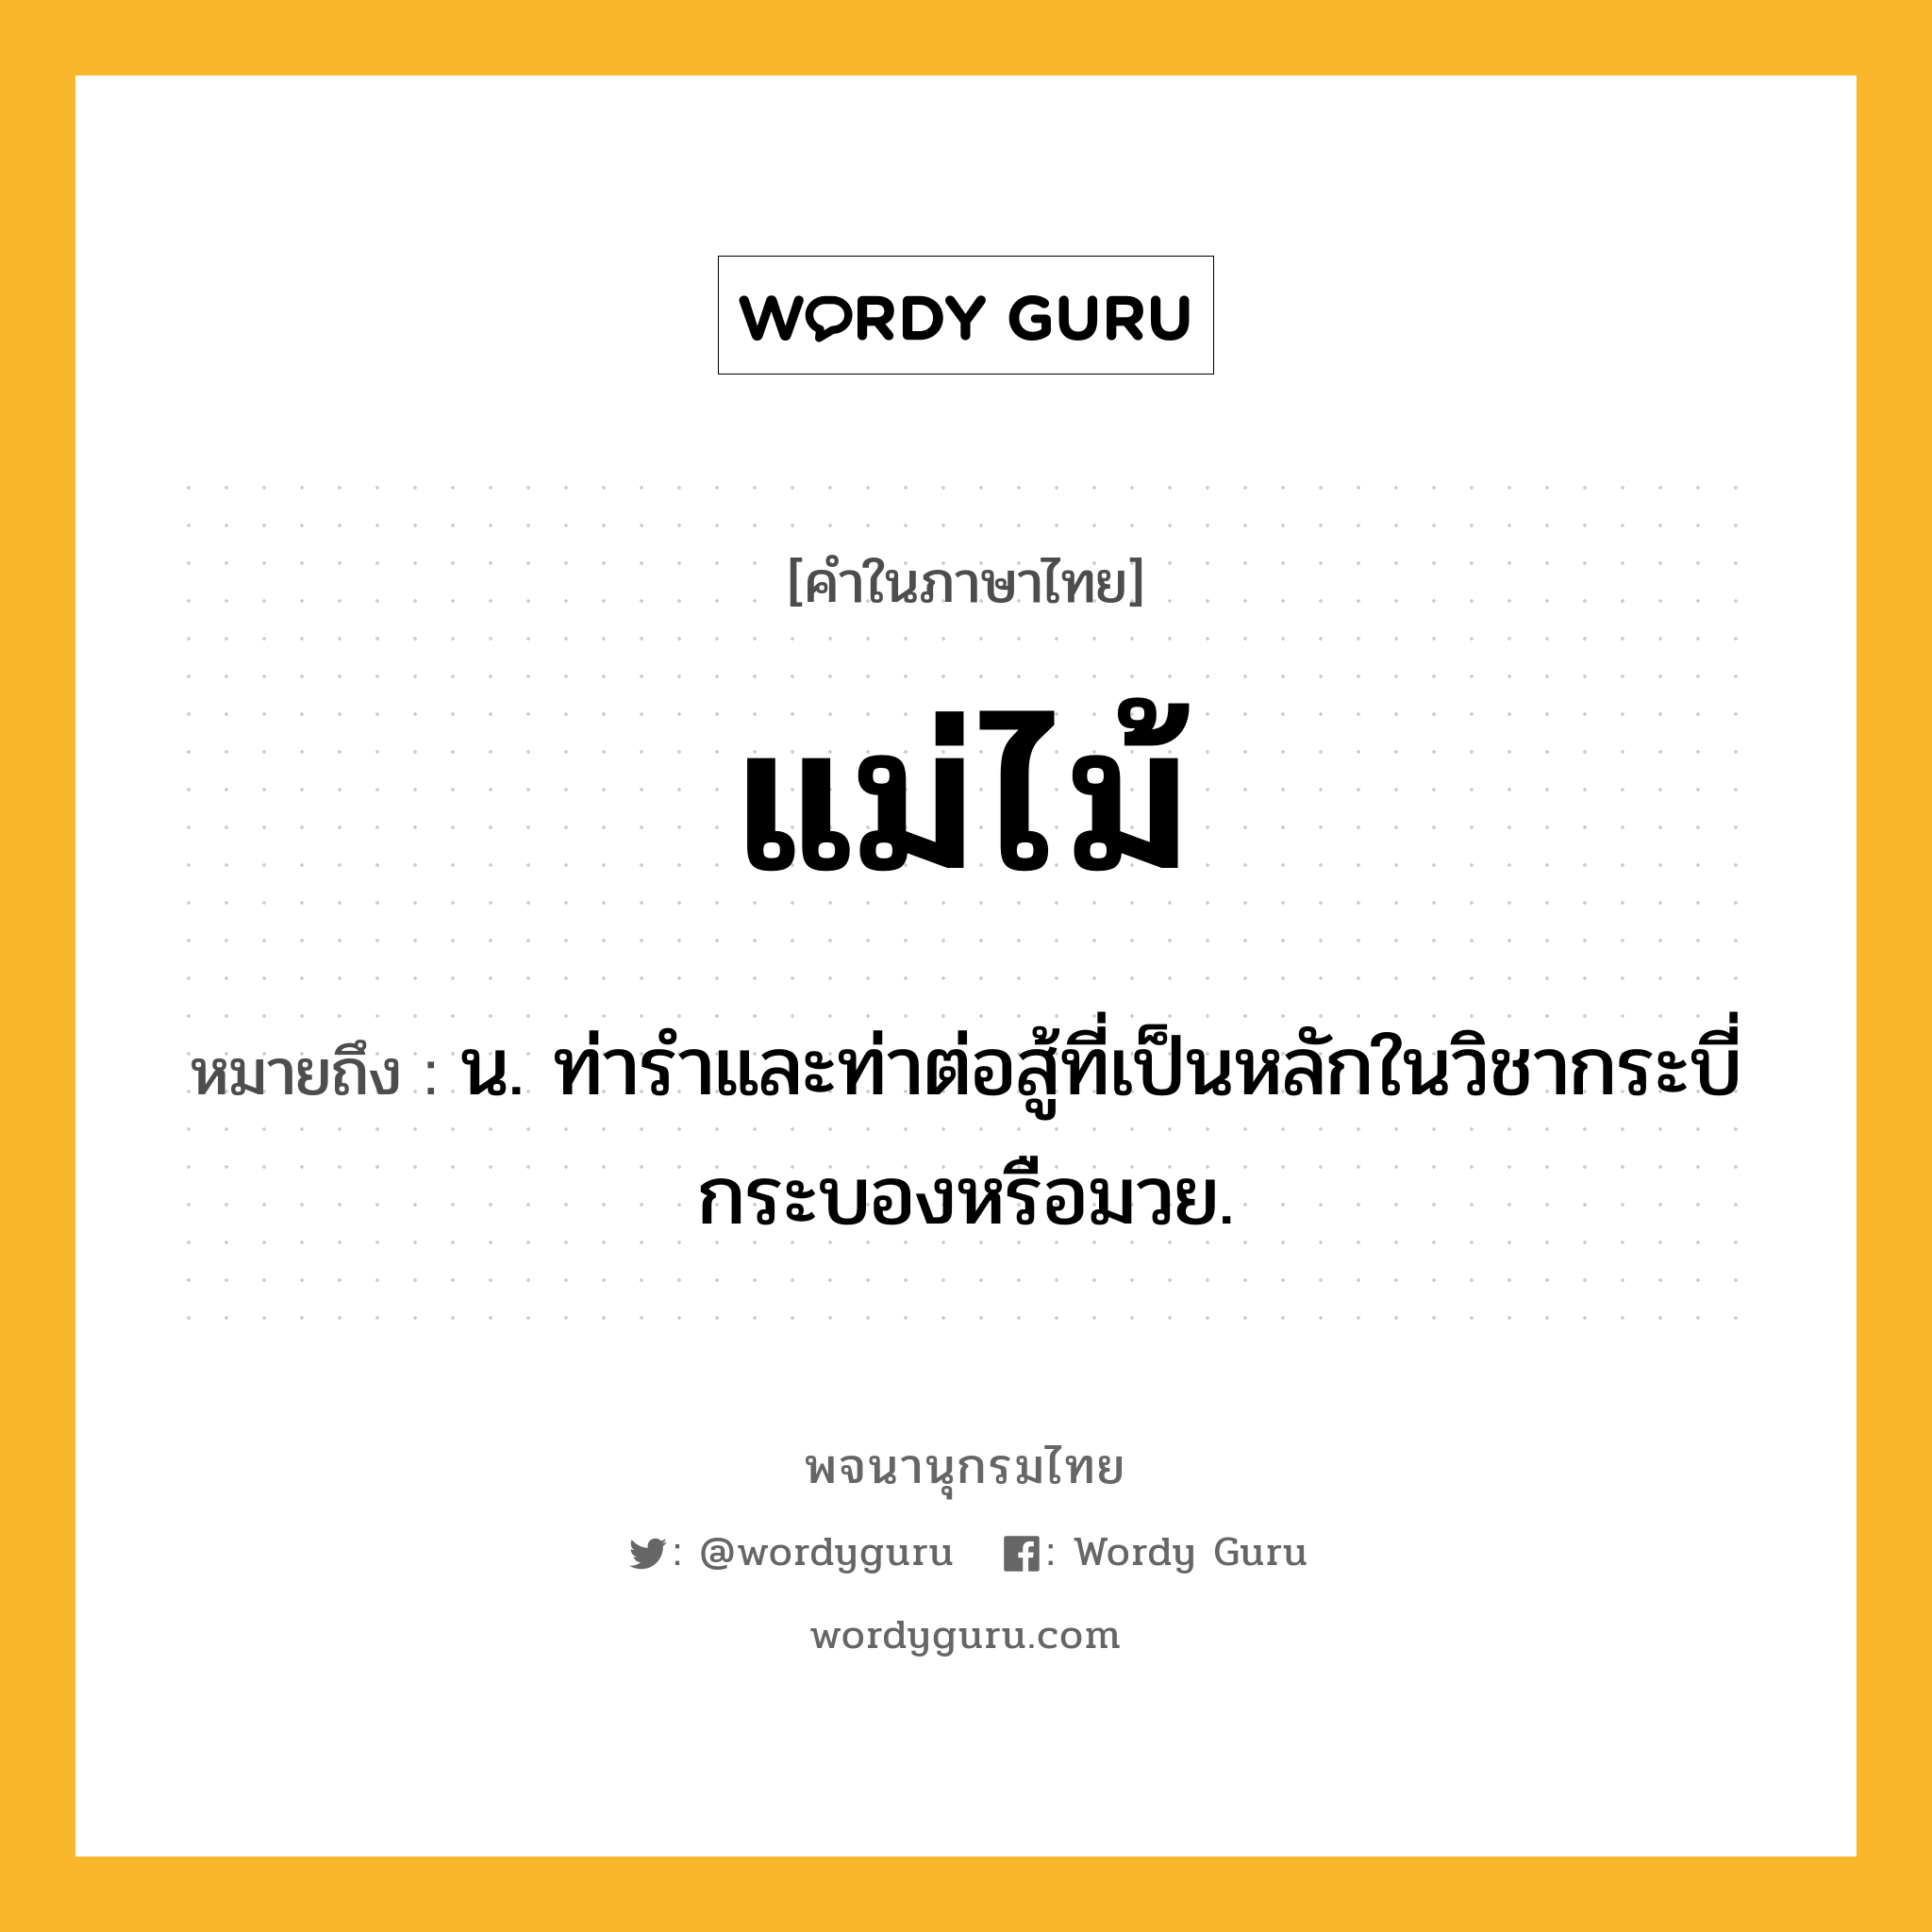 แม่ไม้ ความหมาย หมายถึงอะไร?, คำในภาษาไทย แม่ไม้ หมายถึง น. ท่ารำและท่าต่อสู้ที่เป็นหลักในวิชากระบี่กระบองหรือมวย.